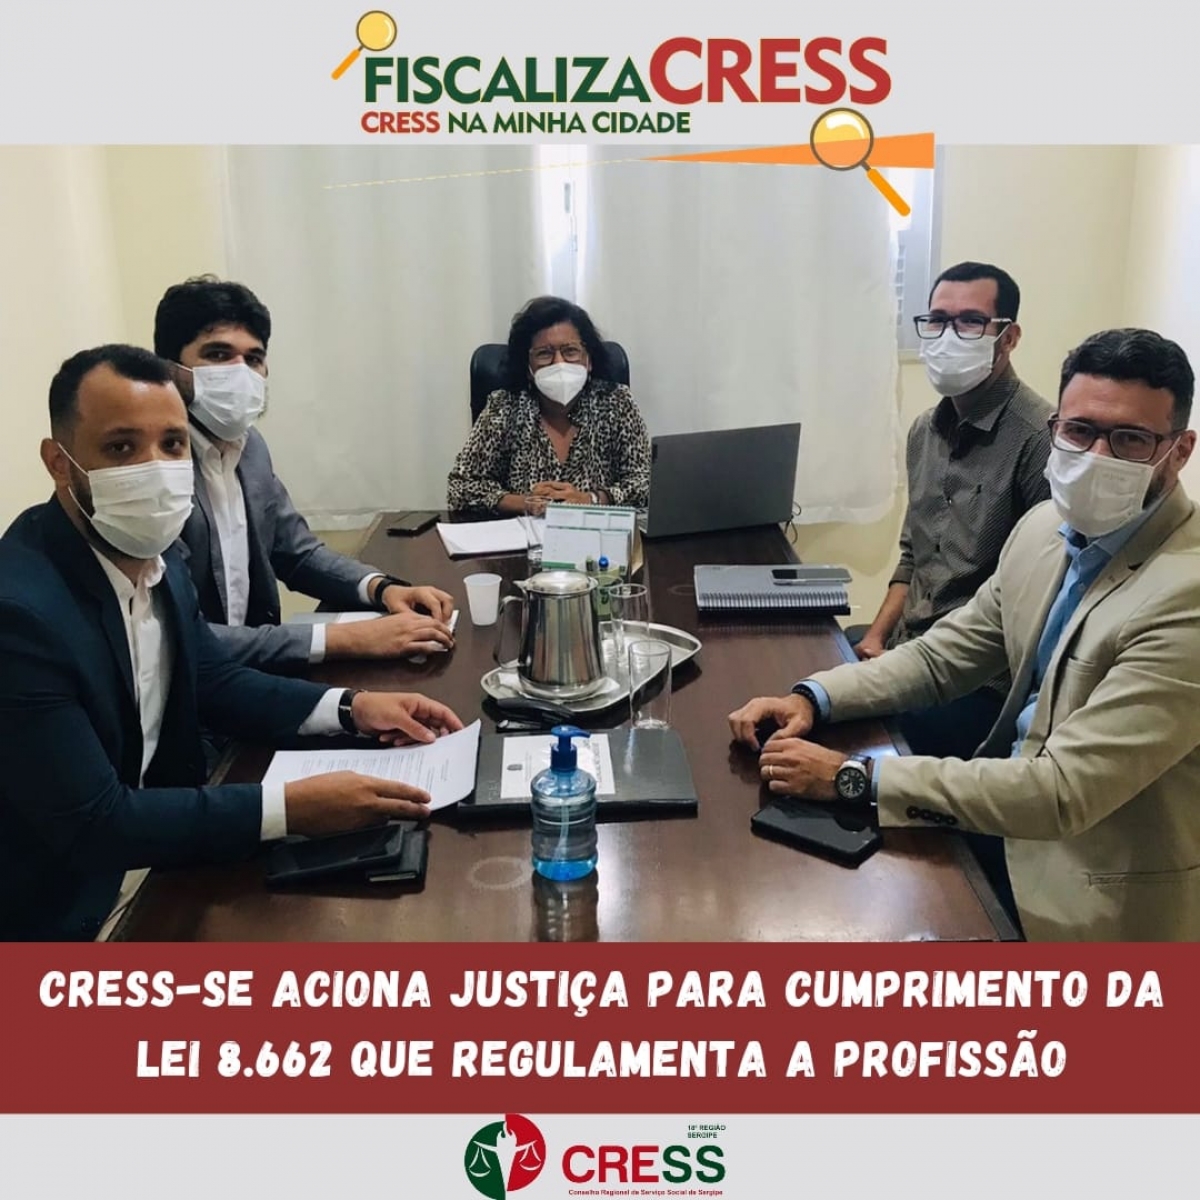 CRESS-SE aciona justiça para cumprimento da Lei que regulamenta a profissão pelas instituições fiscalizadas (Imagem: Divulgação/ Cress/SE)